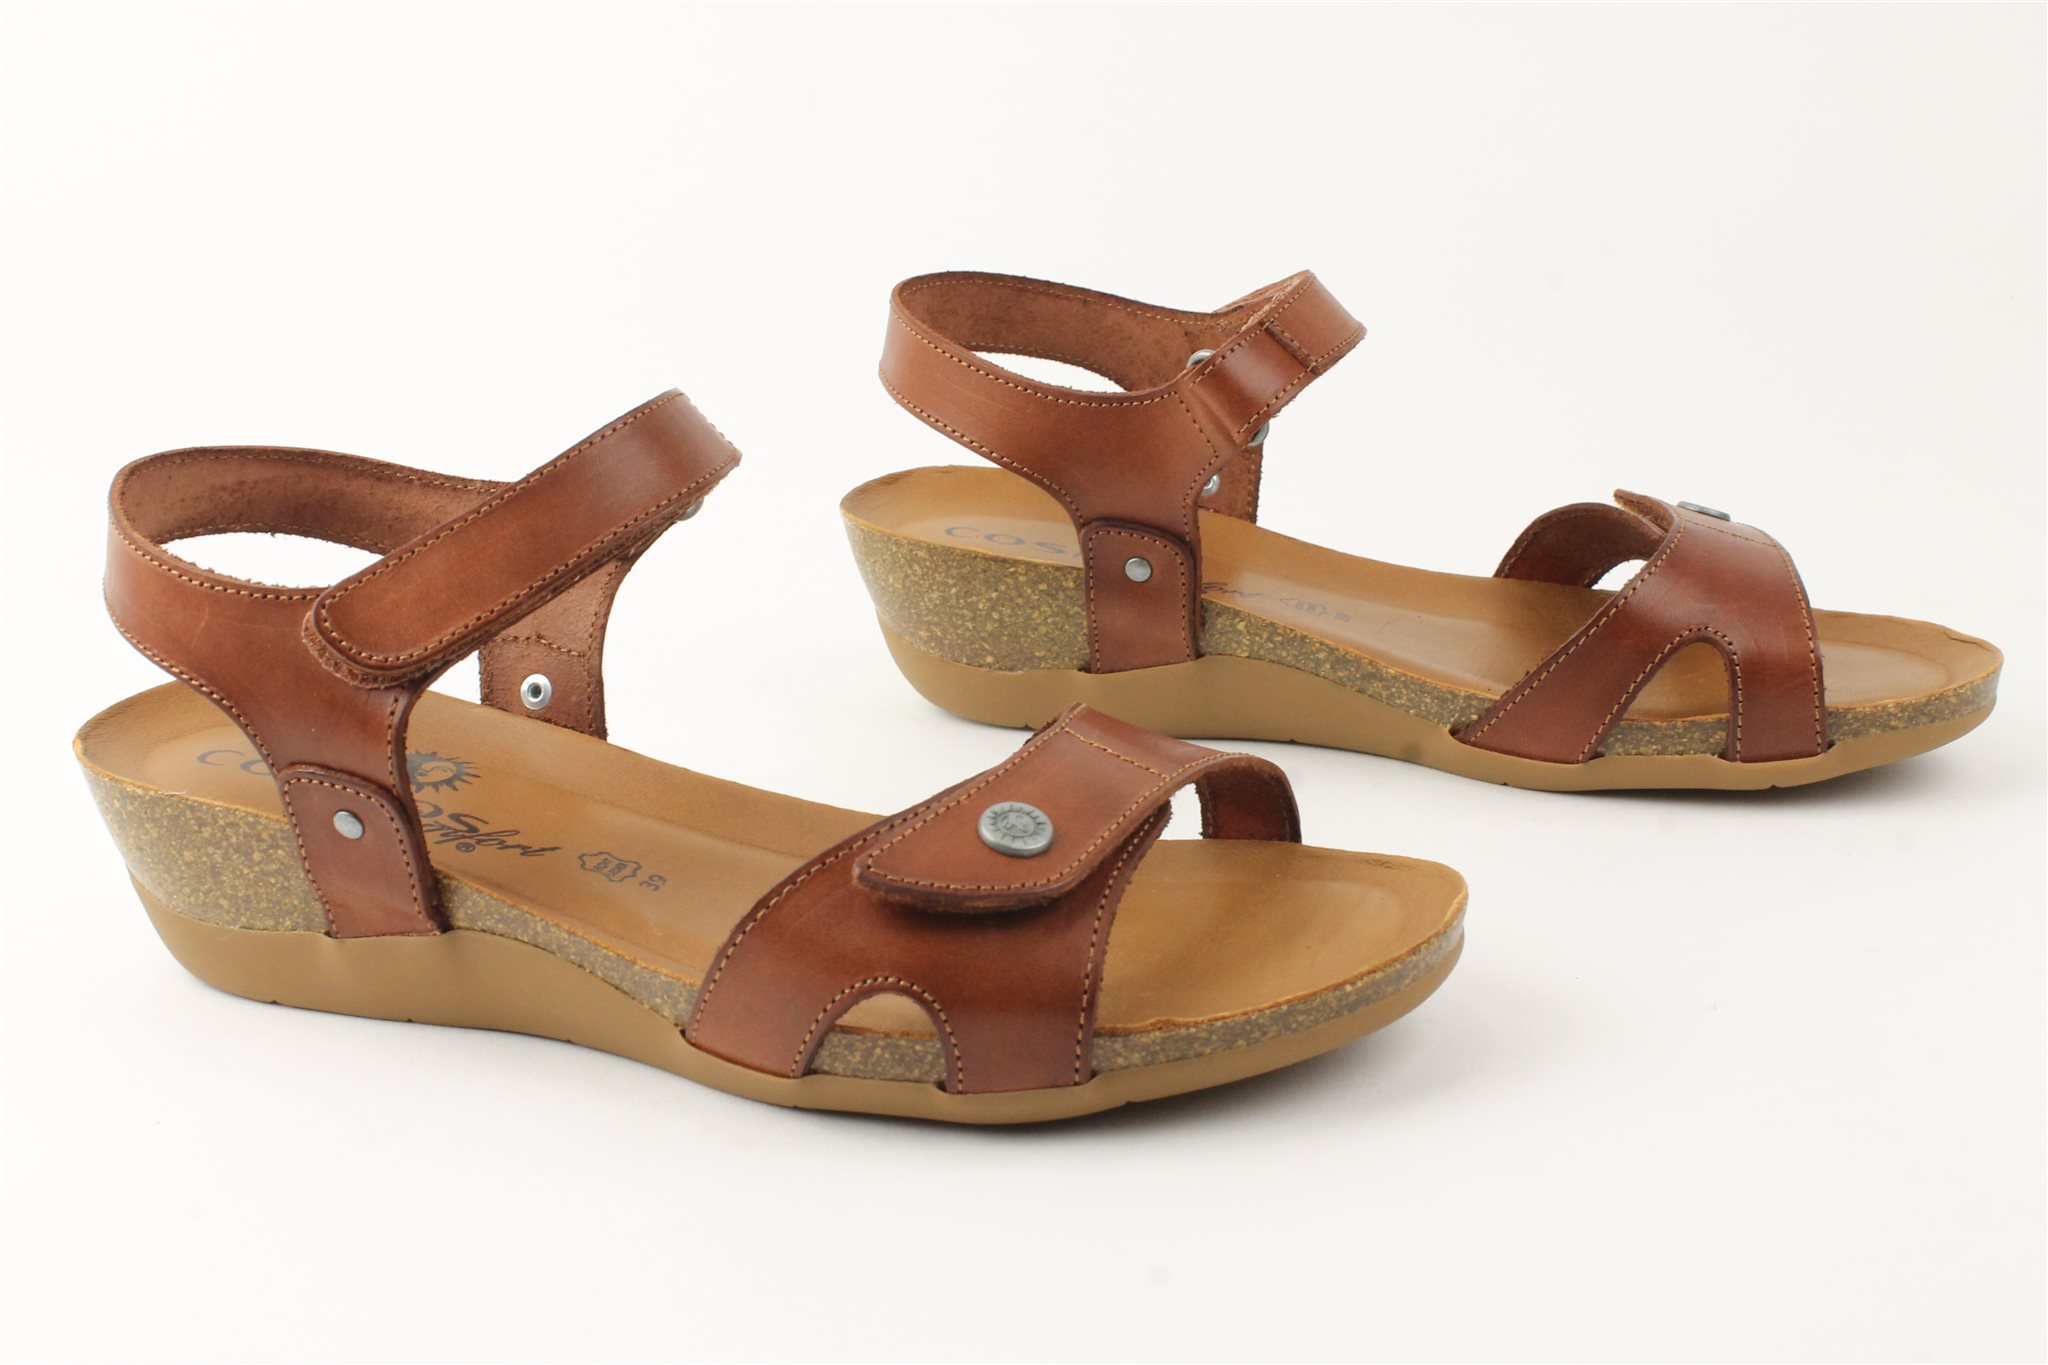 Leggen selecteer Republikeinse partij Cosmos Comfort klittenband sandaal bij Happy Walker - Beoordeeld met 9,7